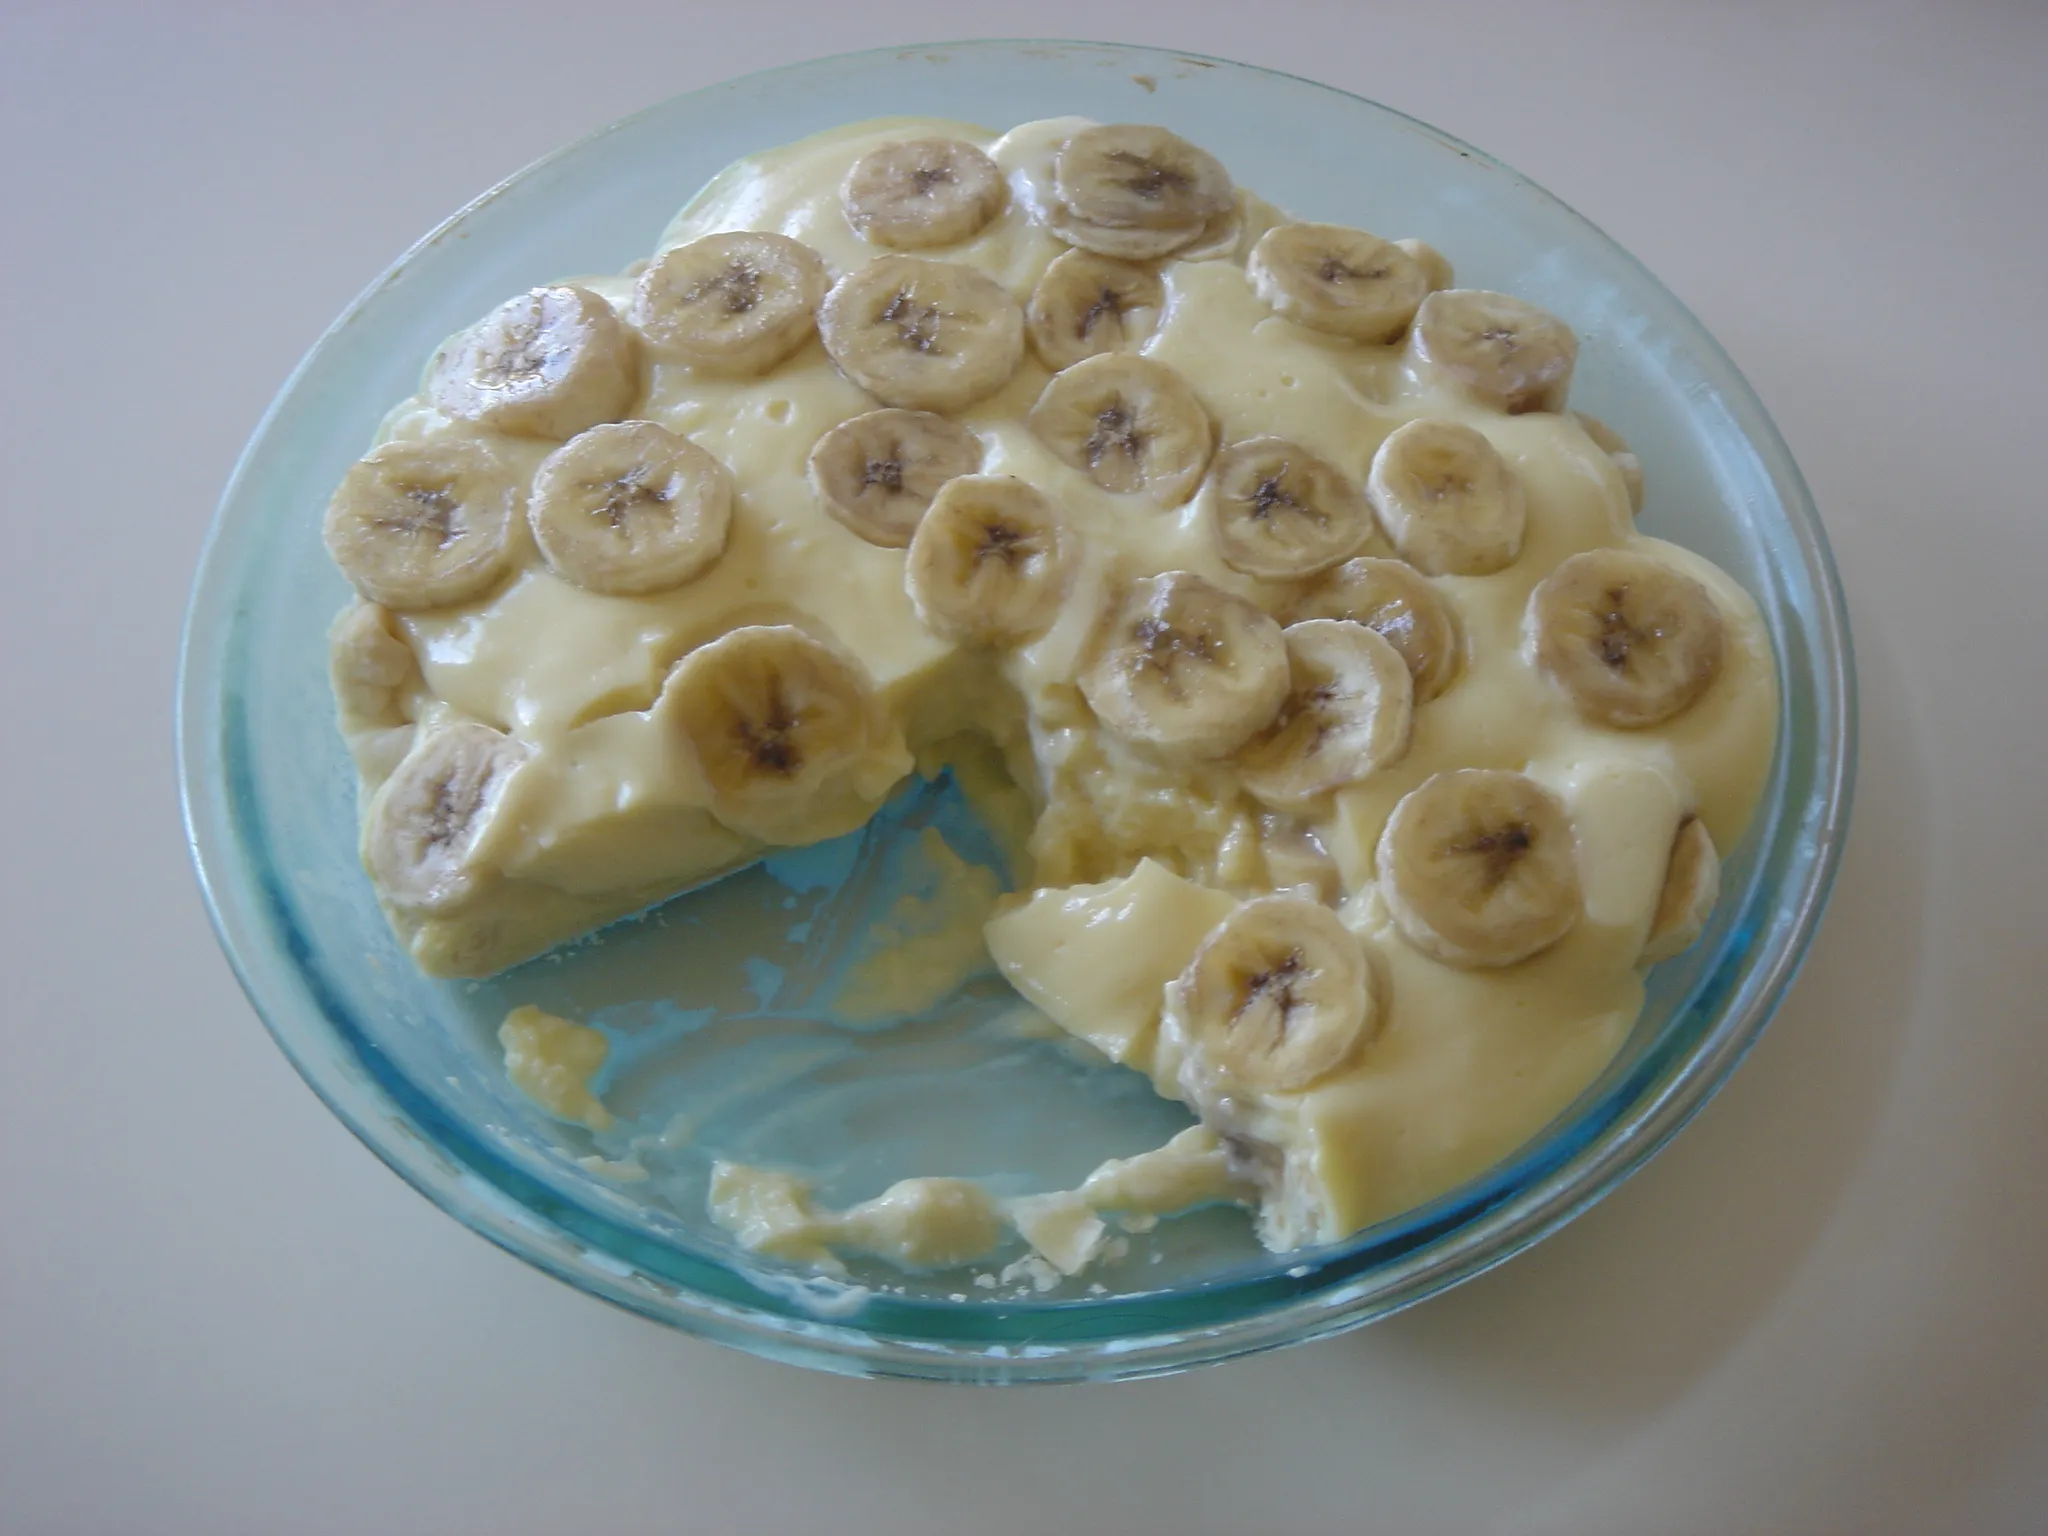 Classic Nilla Wafer Banana Pudding Recipe: A Delicious and Nostalgic Dessert